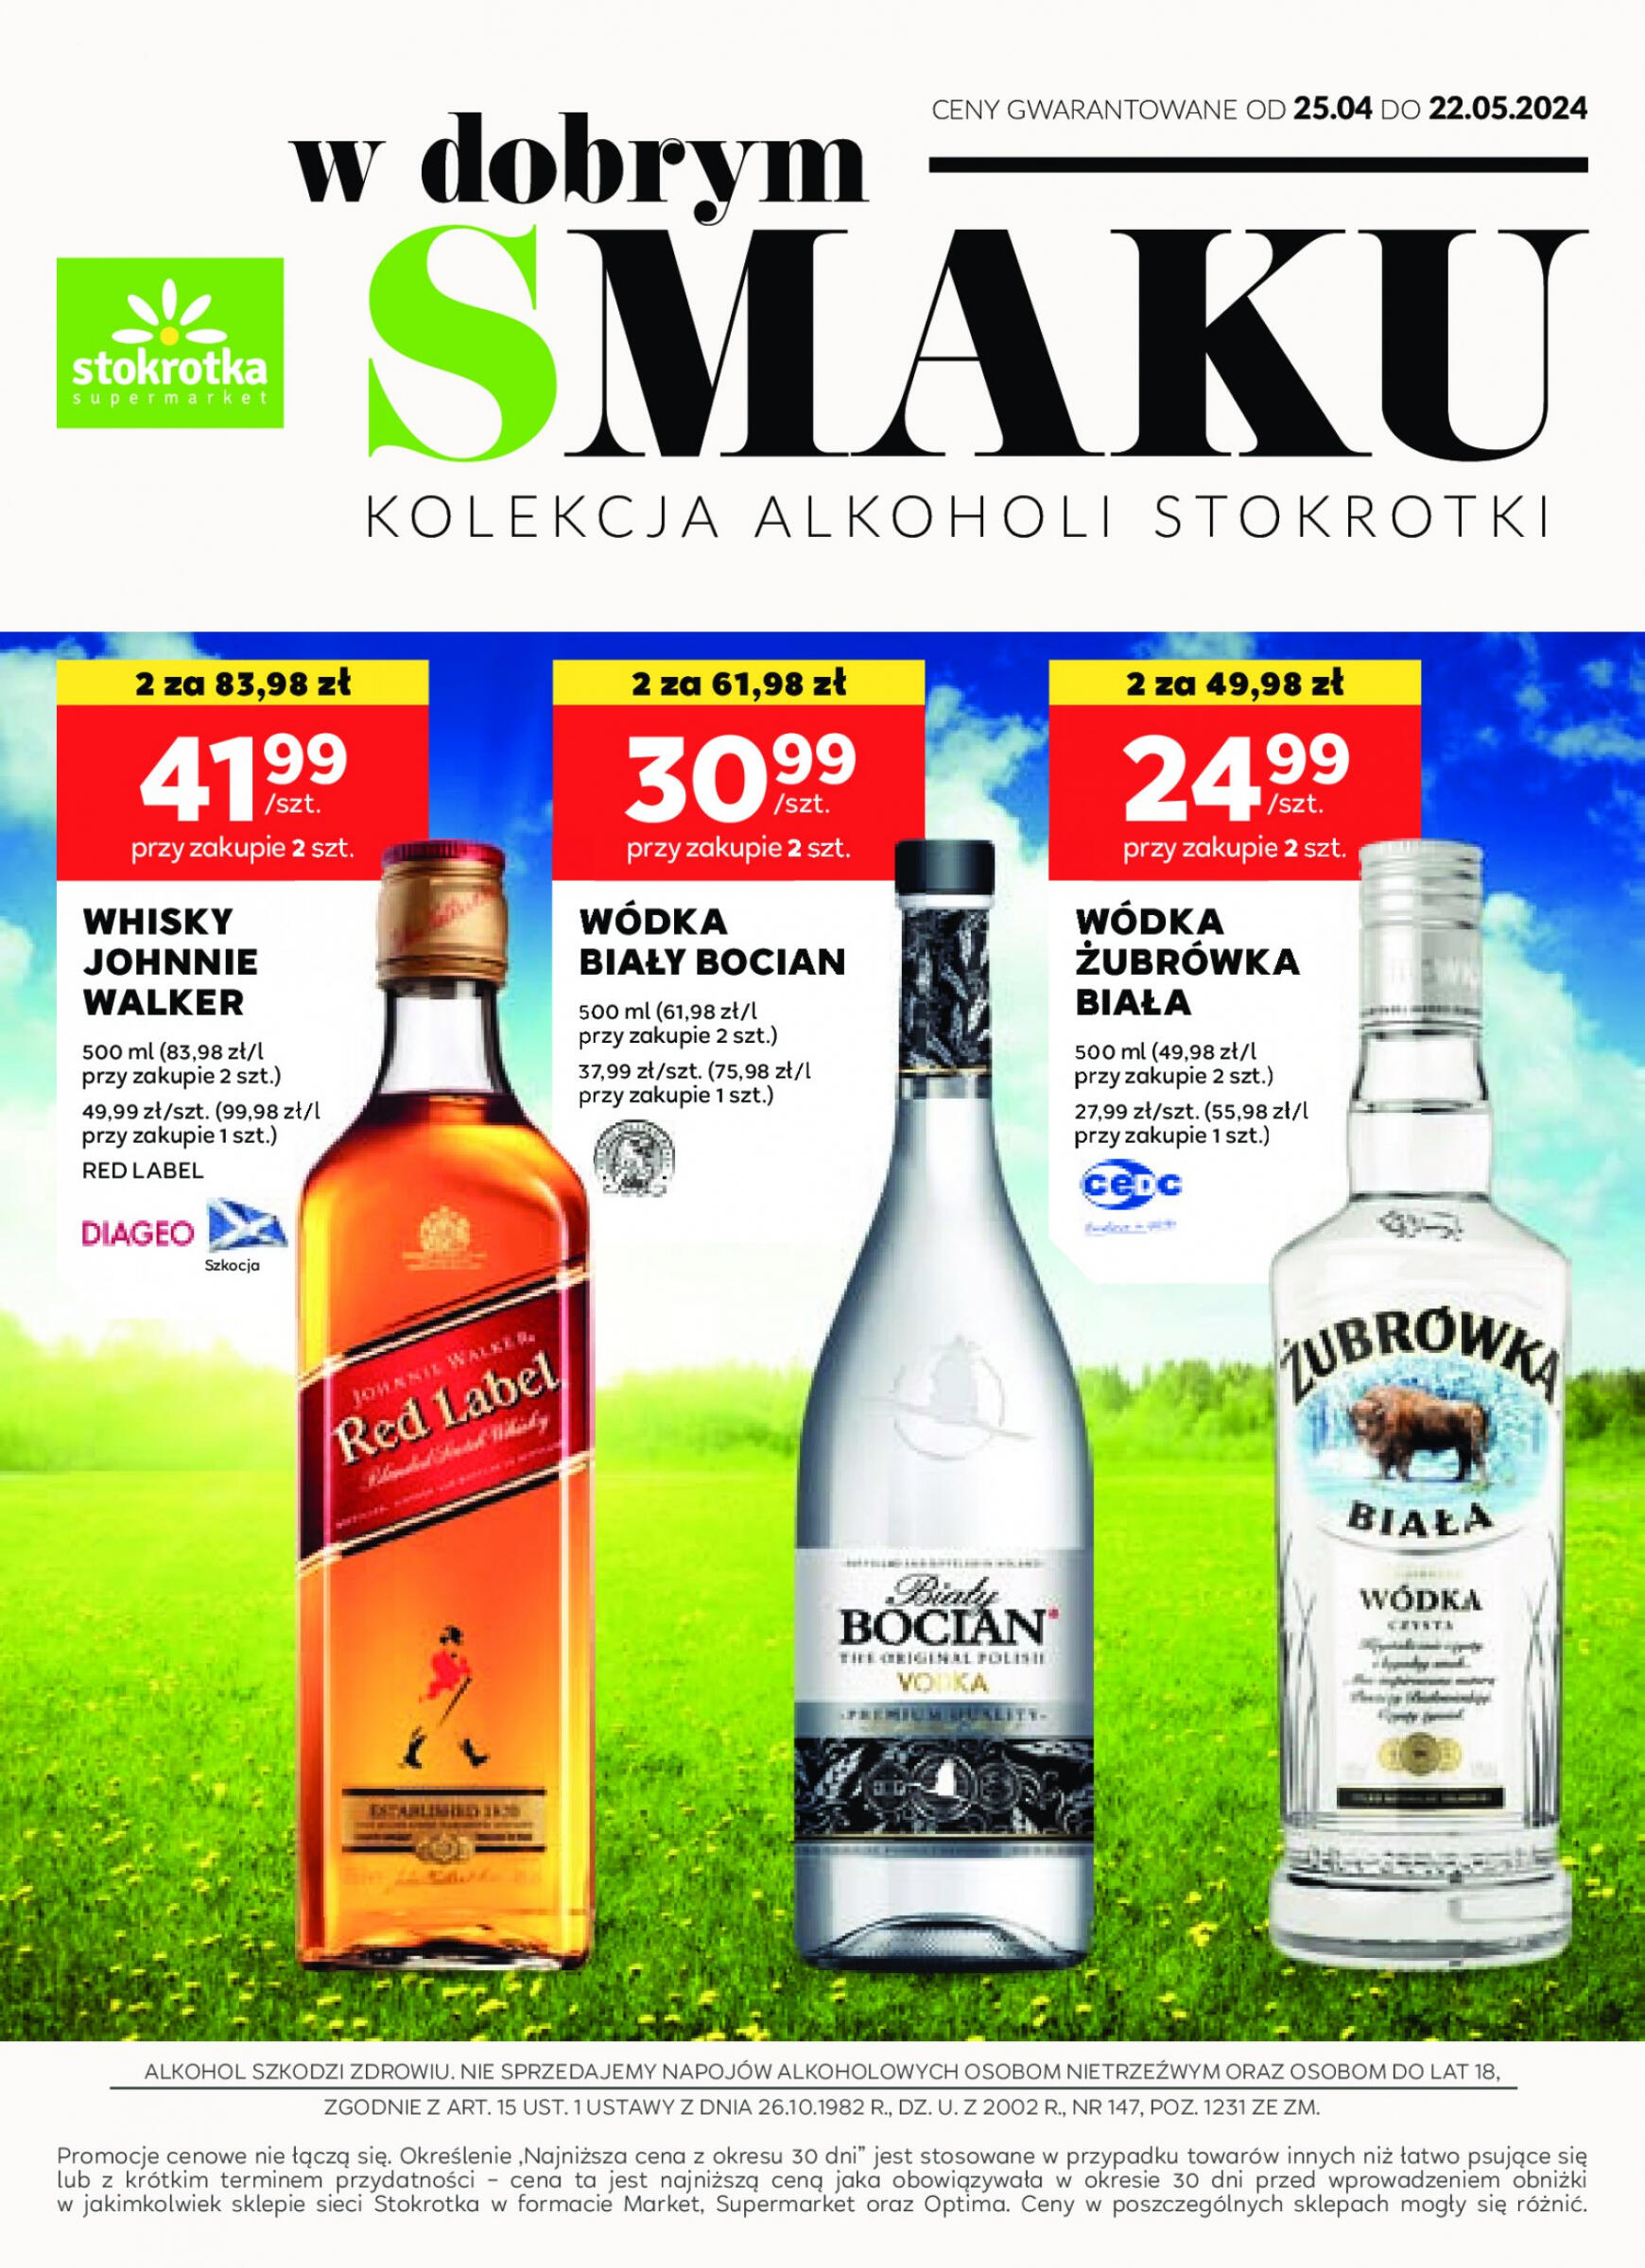 stokrotka - Stokrotka Supermarket - Oferta alkoholowa gazetka aktualna ważna od 25.04. - 22.05.